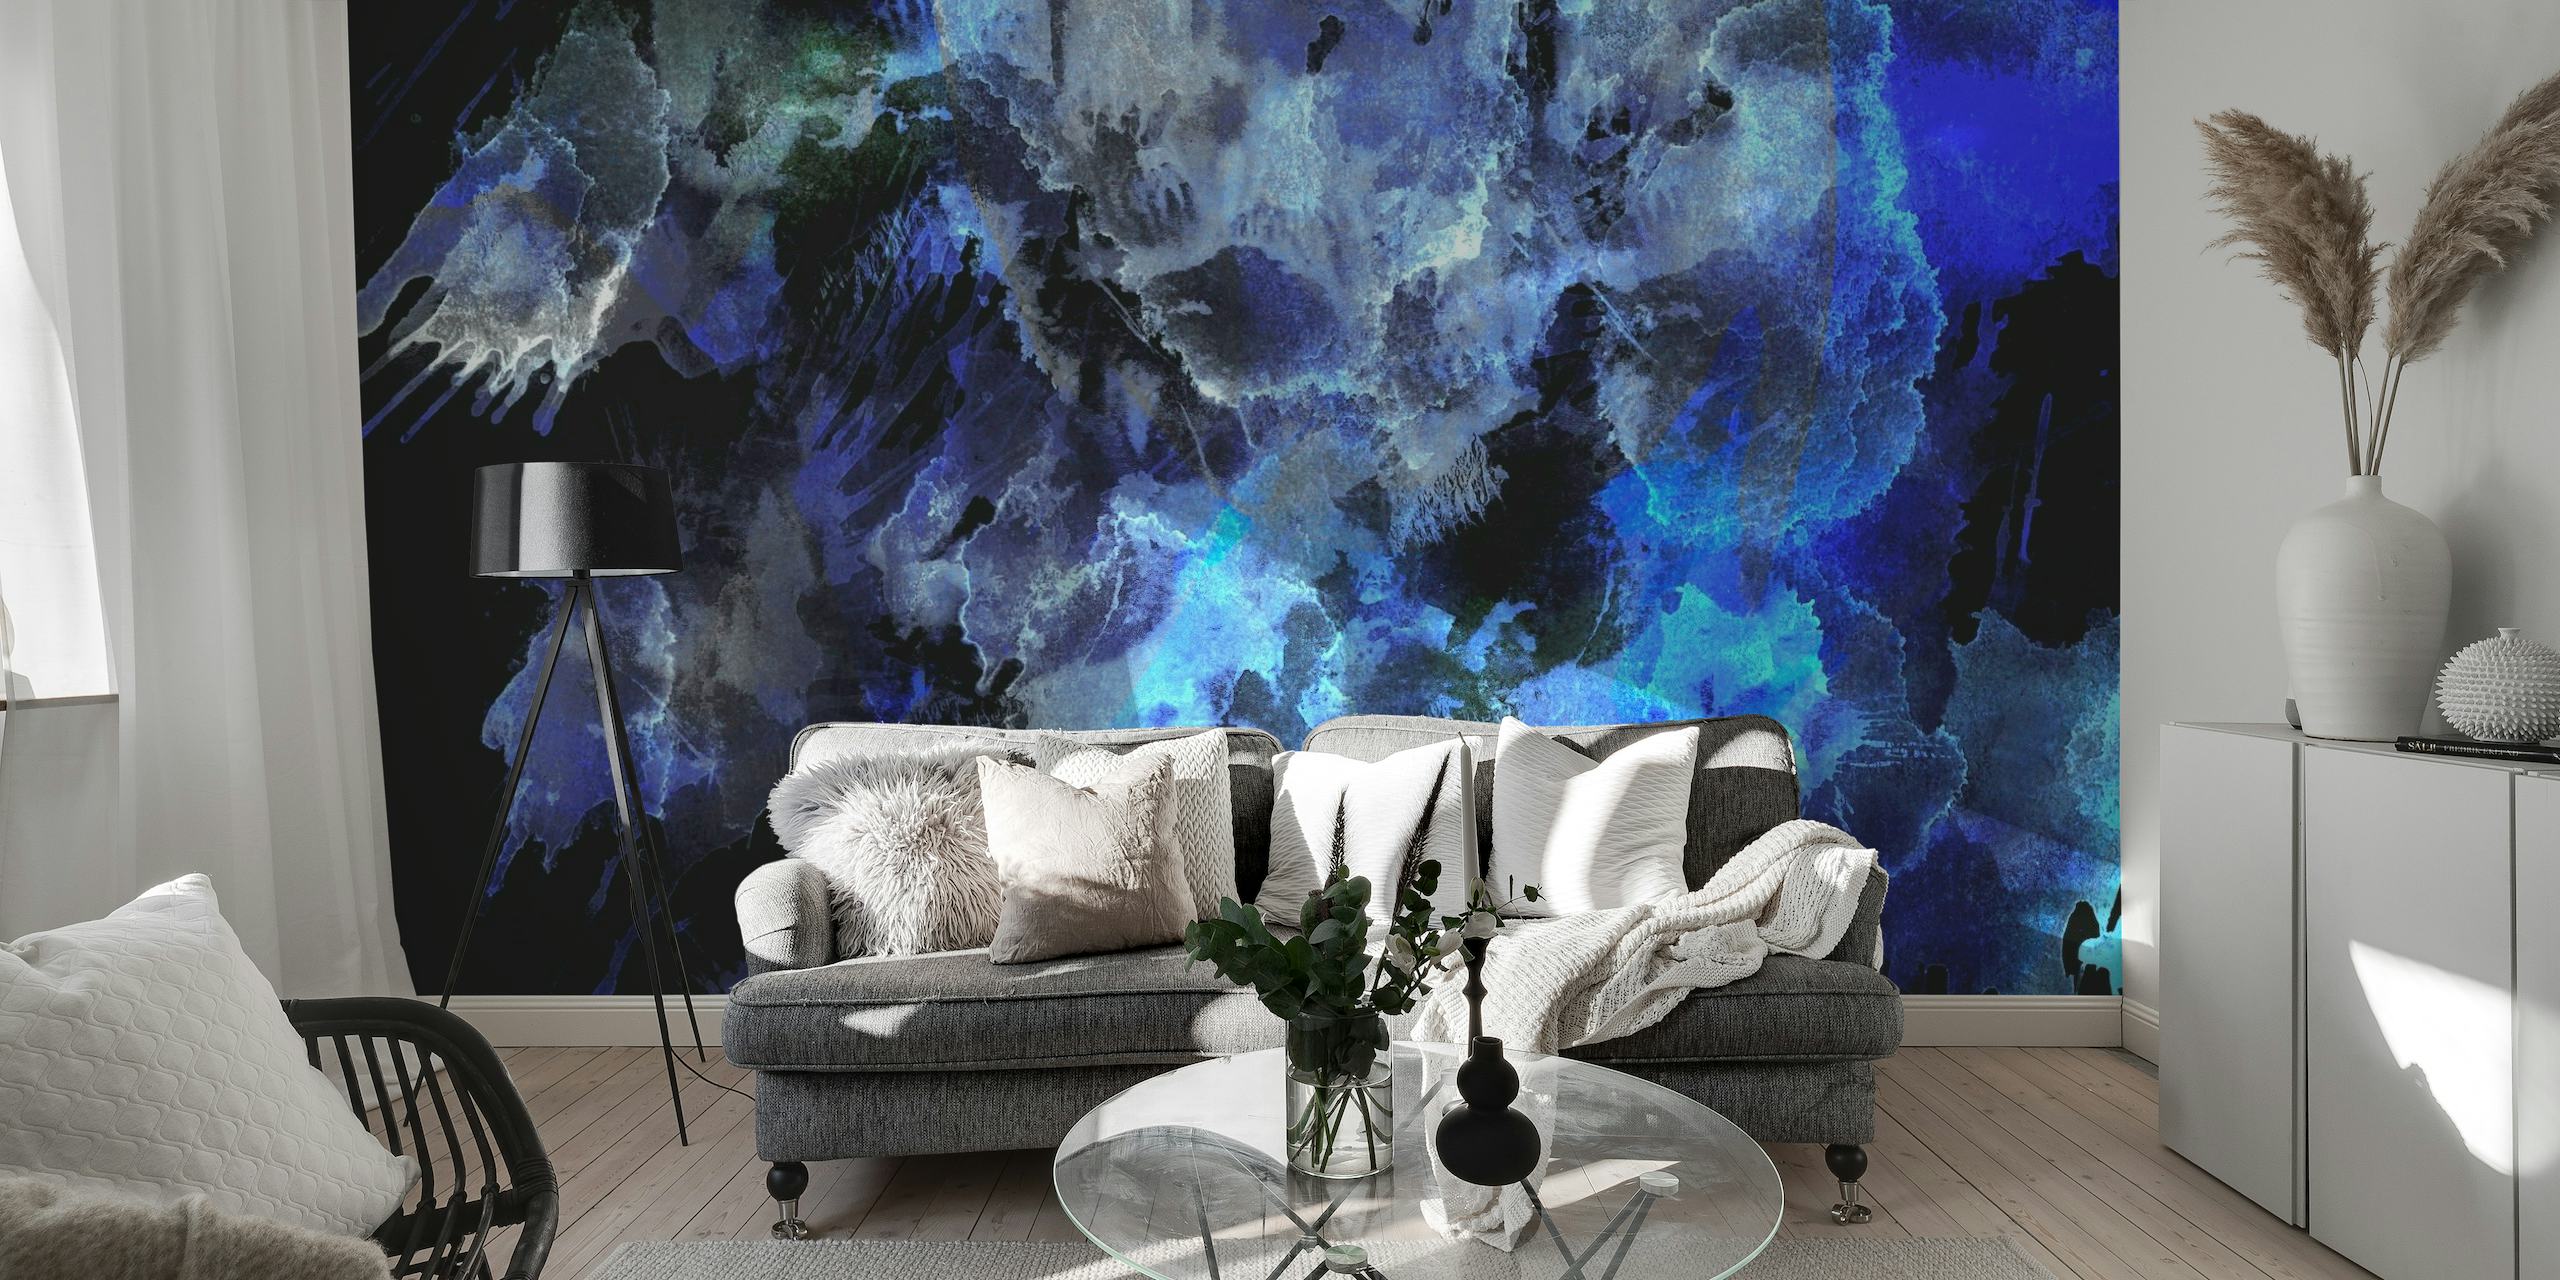 Abstrakt midnatsblå og sort akvarel vægmaleri, der skaber en oceanisk stemning